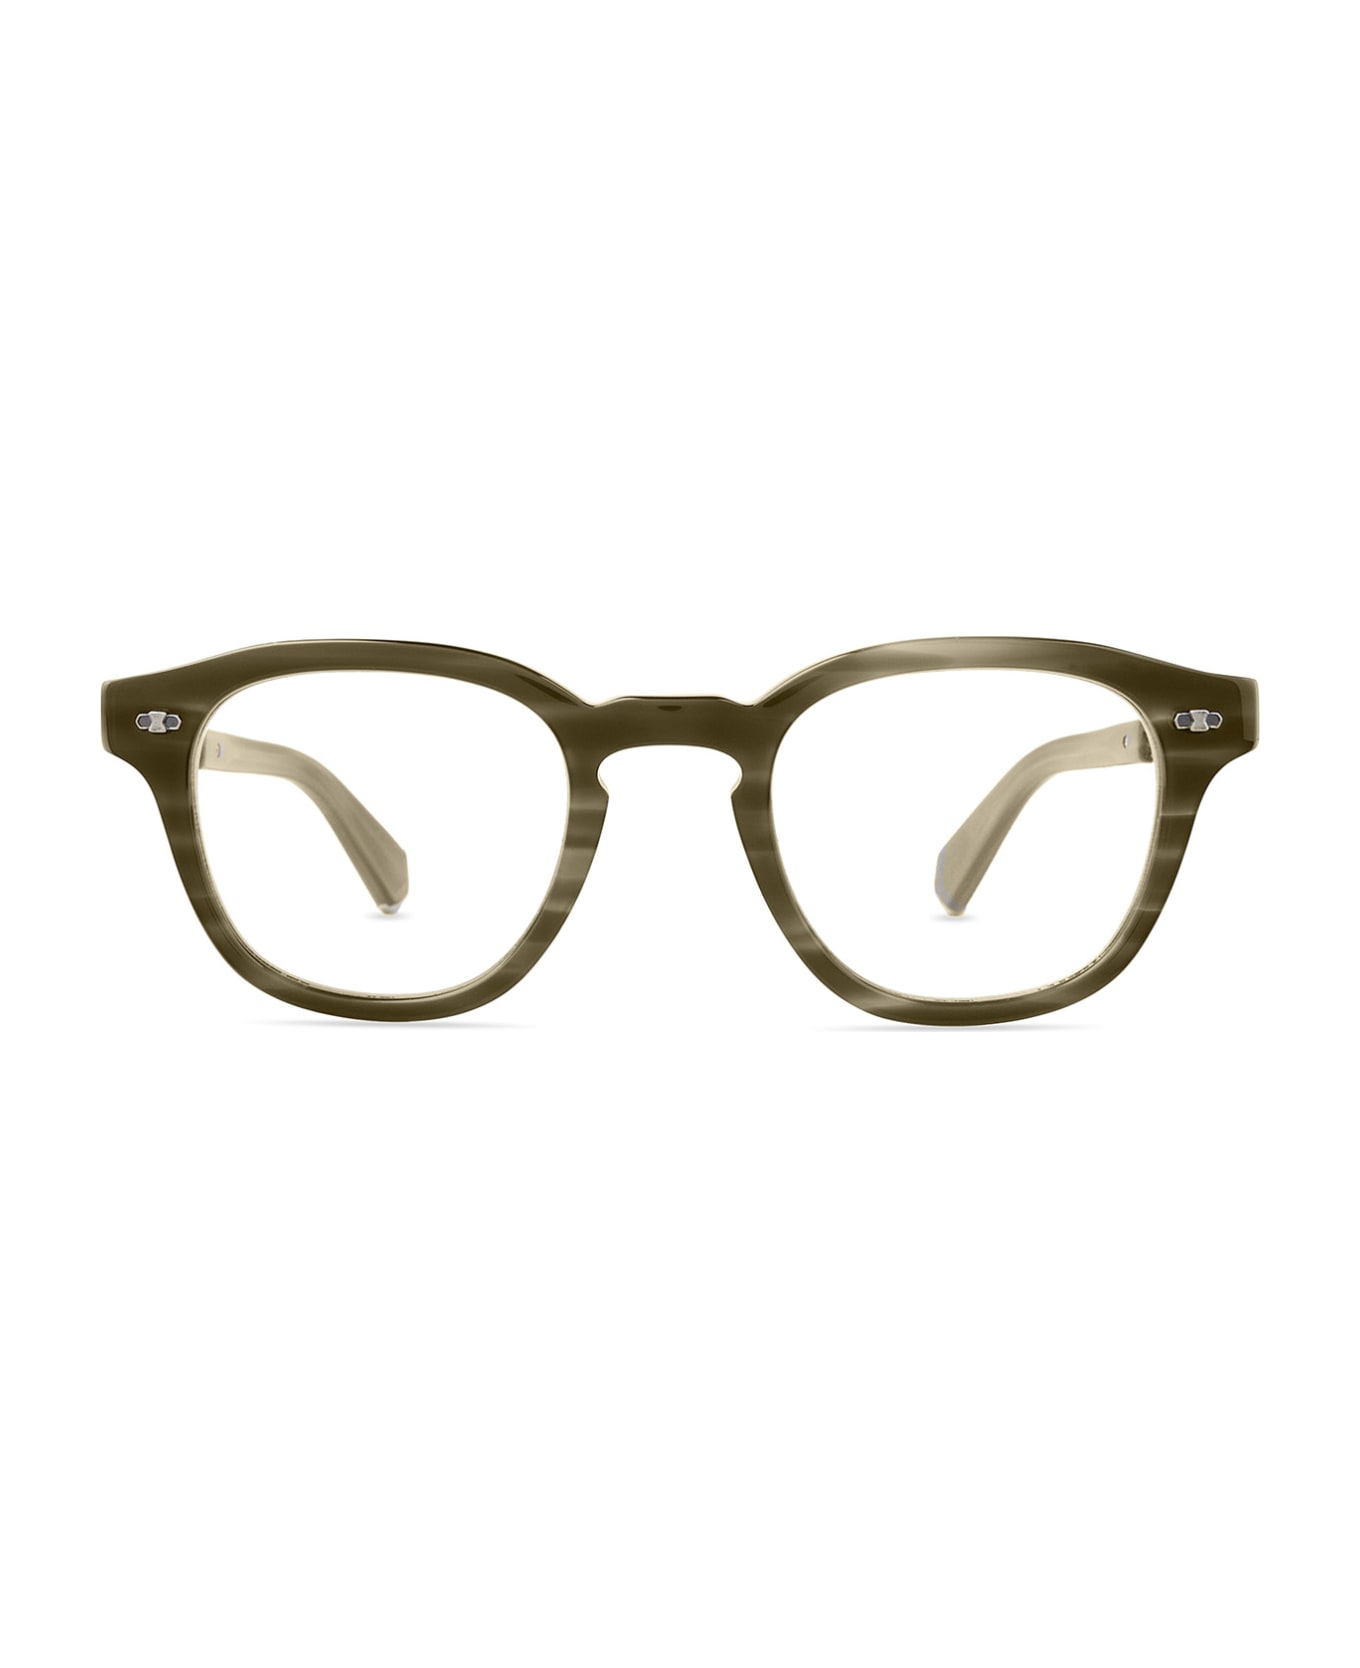 Mr. Leight James C Kelp-pewter Glasses - Kelp-Pewter